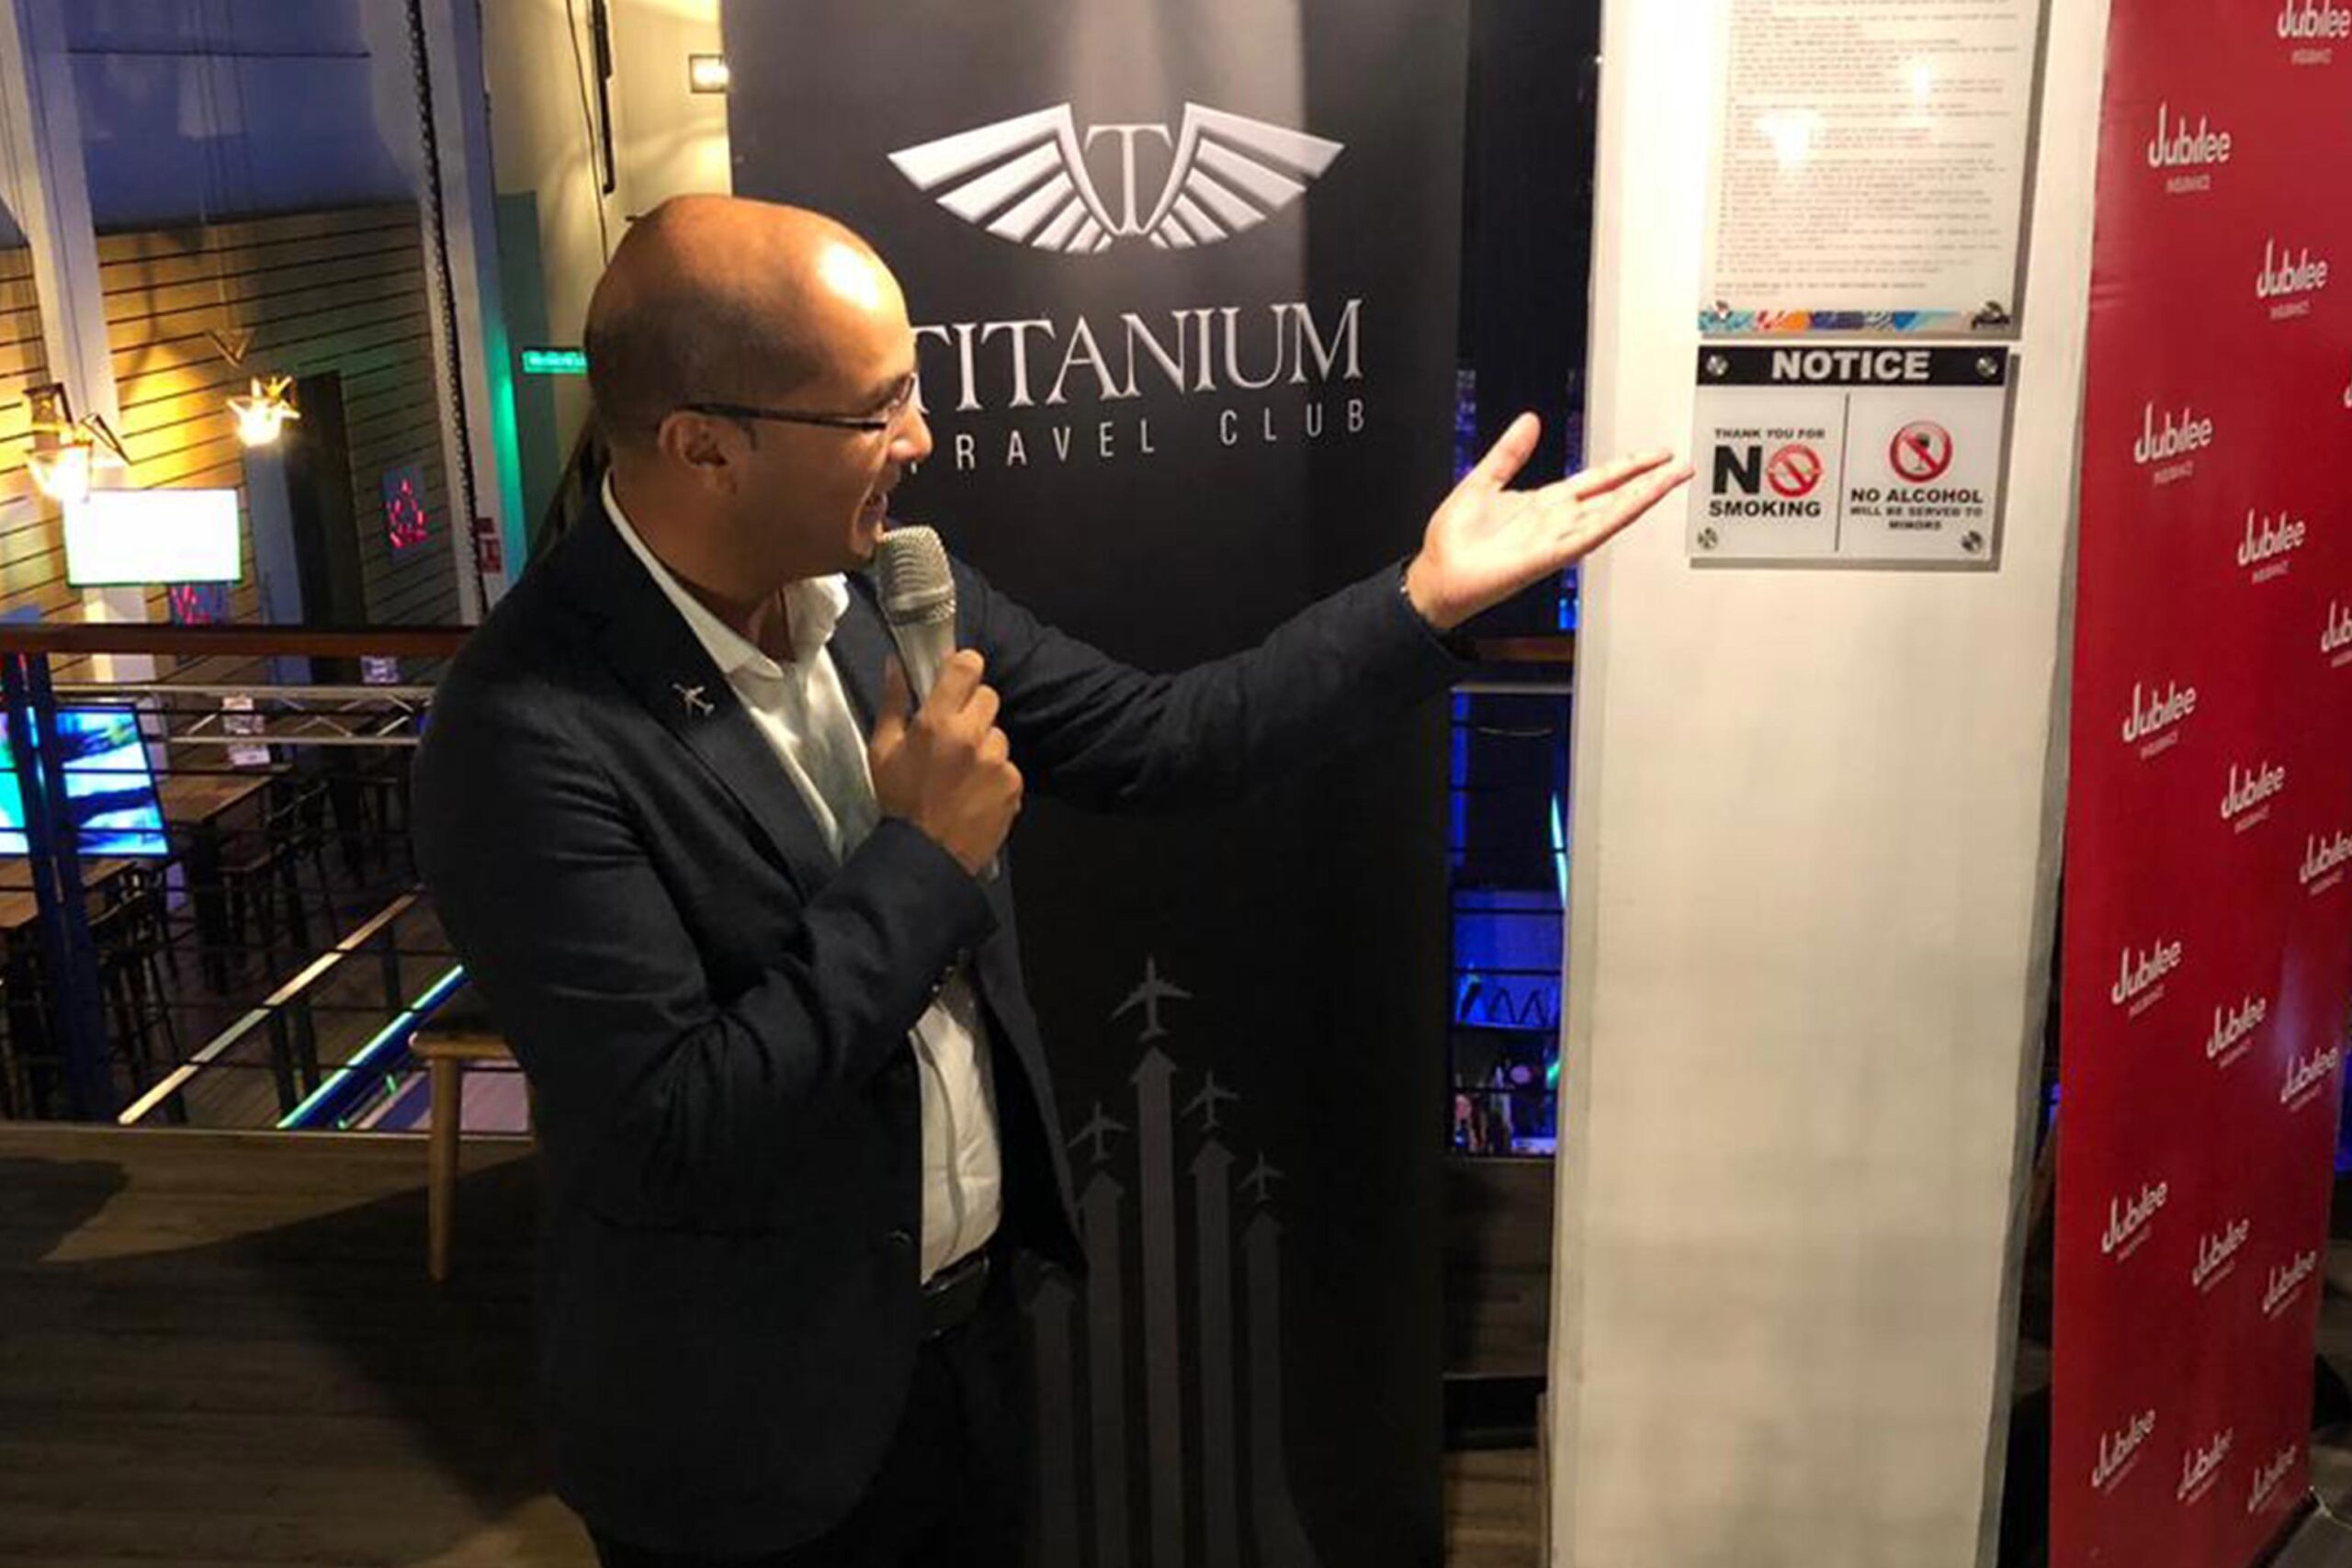 Titanium Travel Club - Corporate Event